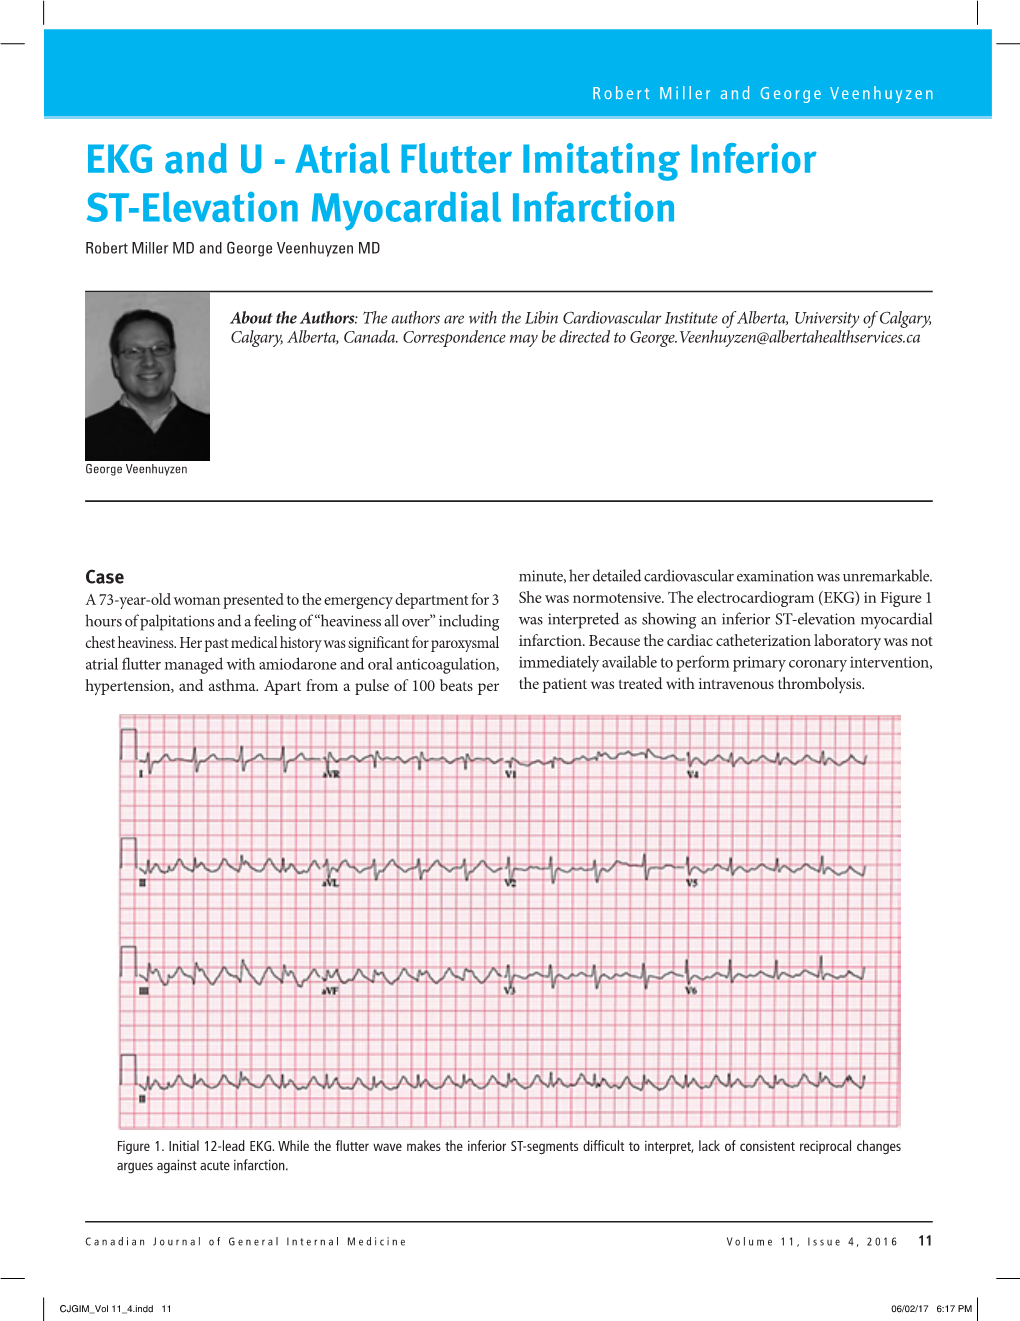 Atrial Flutter Imitating Inferior ST-Elevation Myocardial Infarction Robert Miller MD and George Veenhuyzen MD